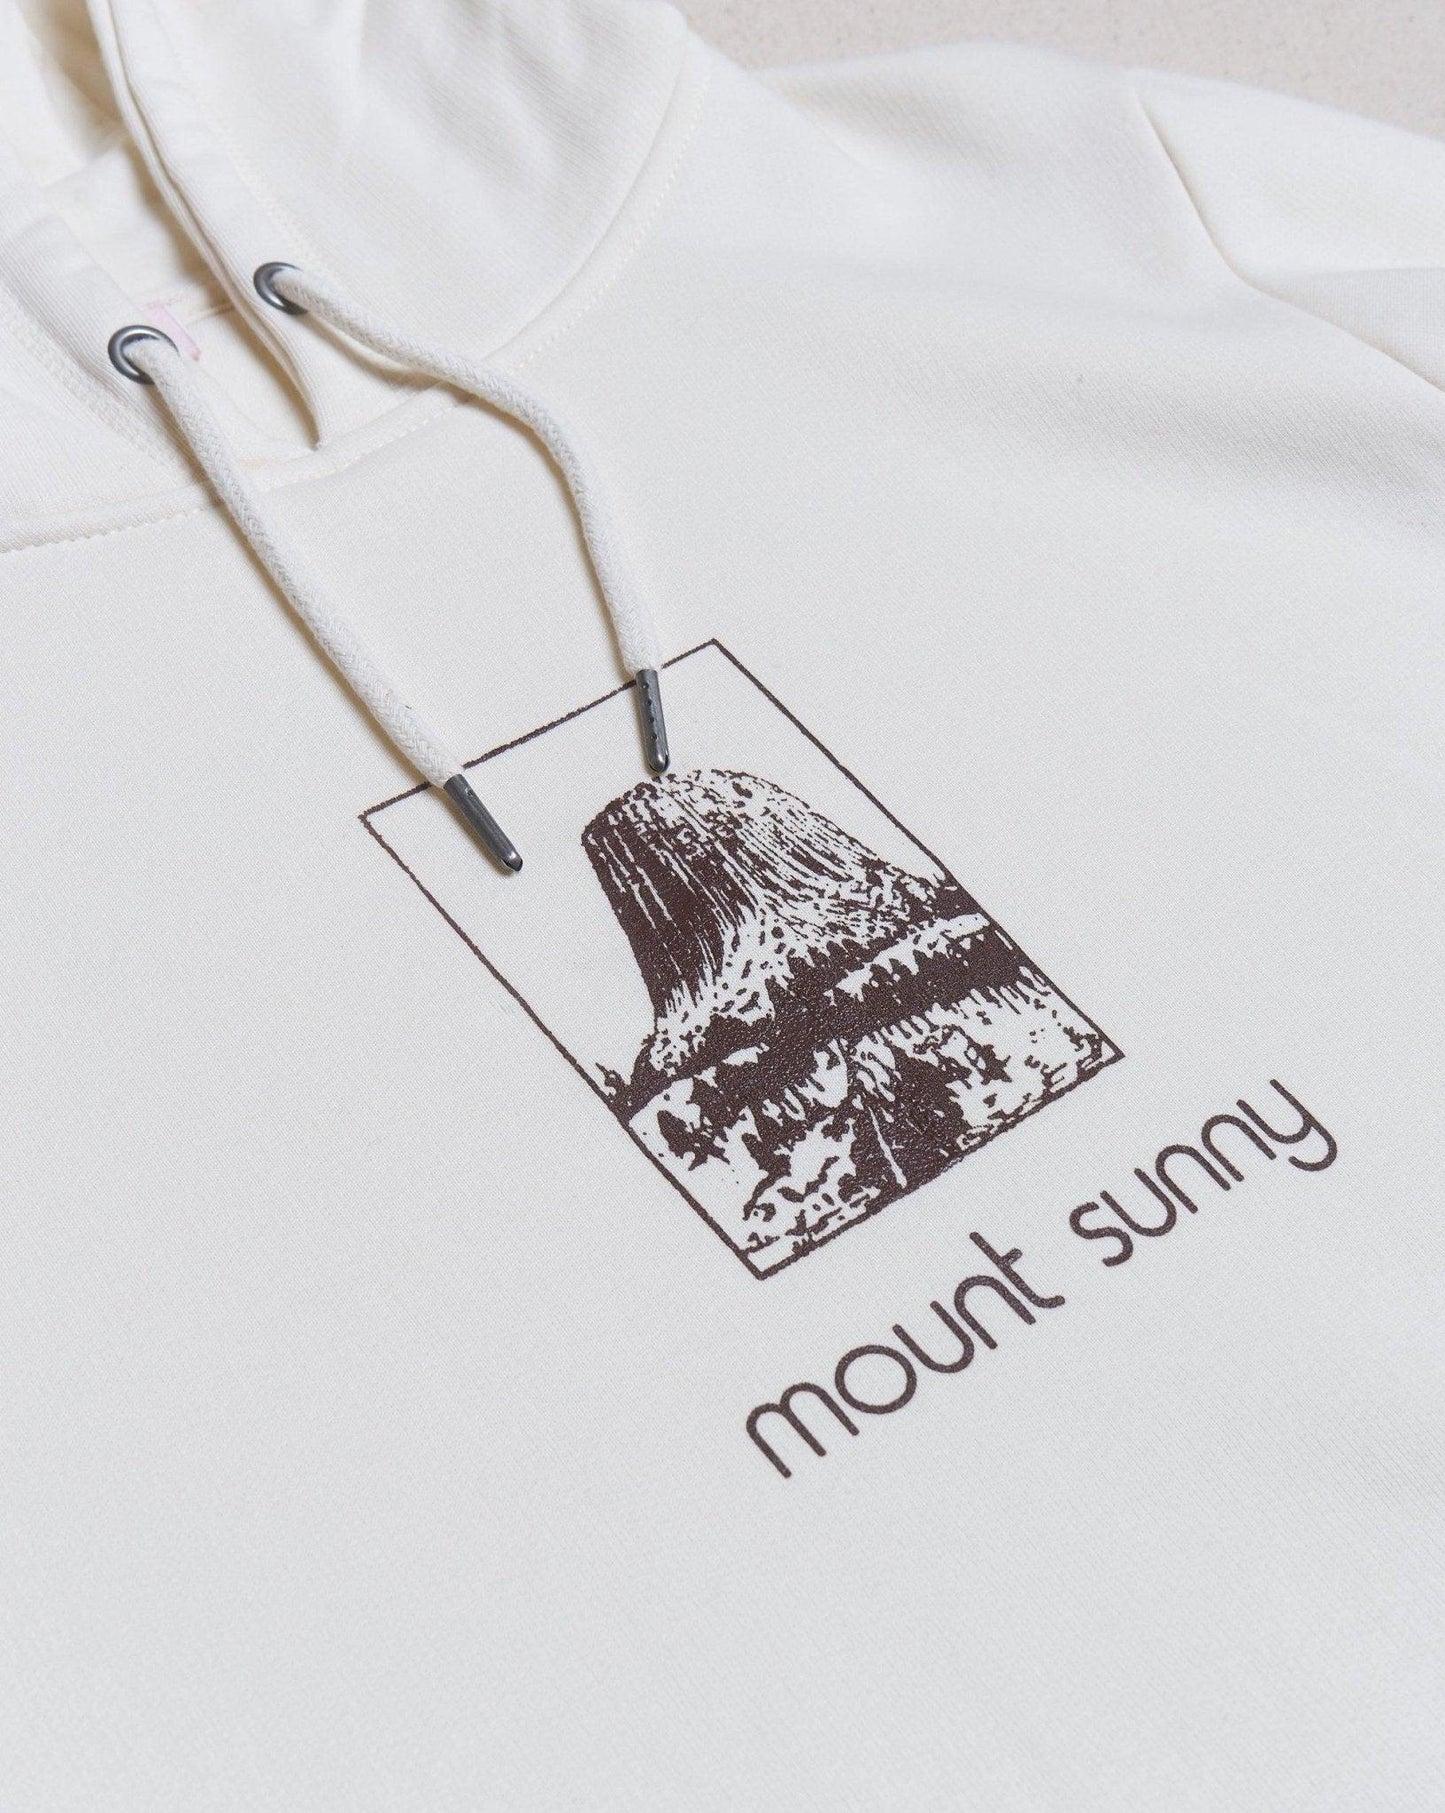 Mount Sunny "Sunny" Hoody - Natural -Mount Sunny - URAHARA